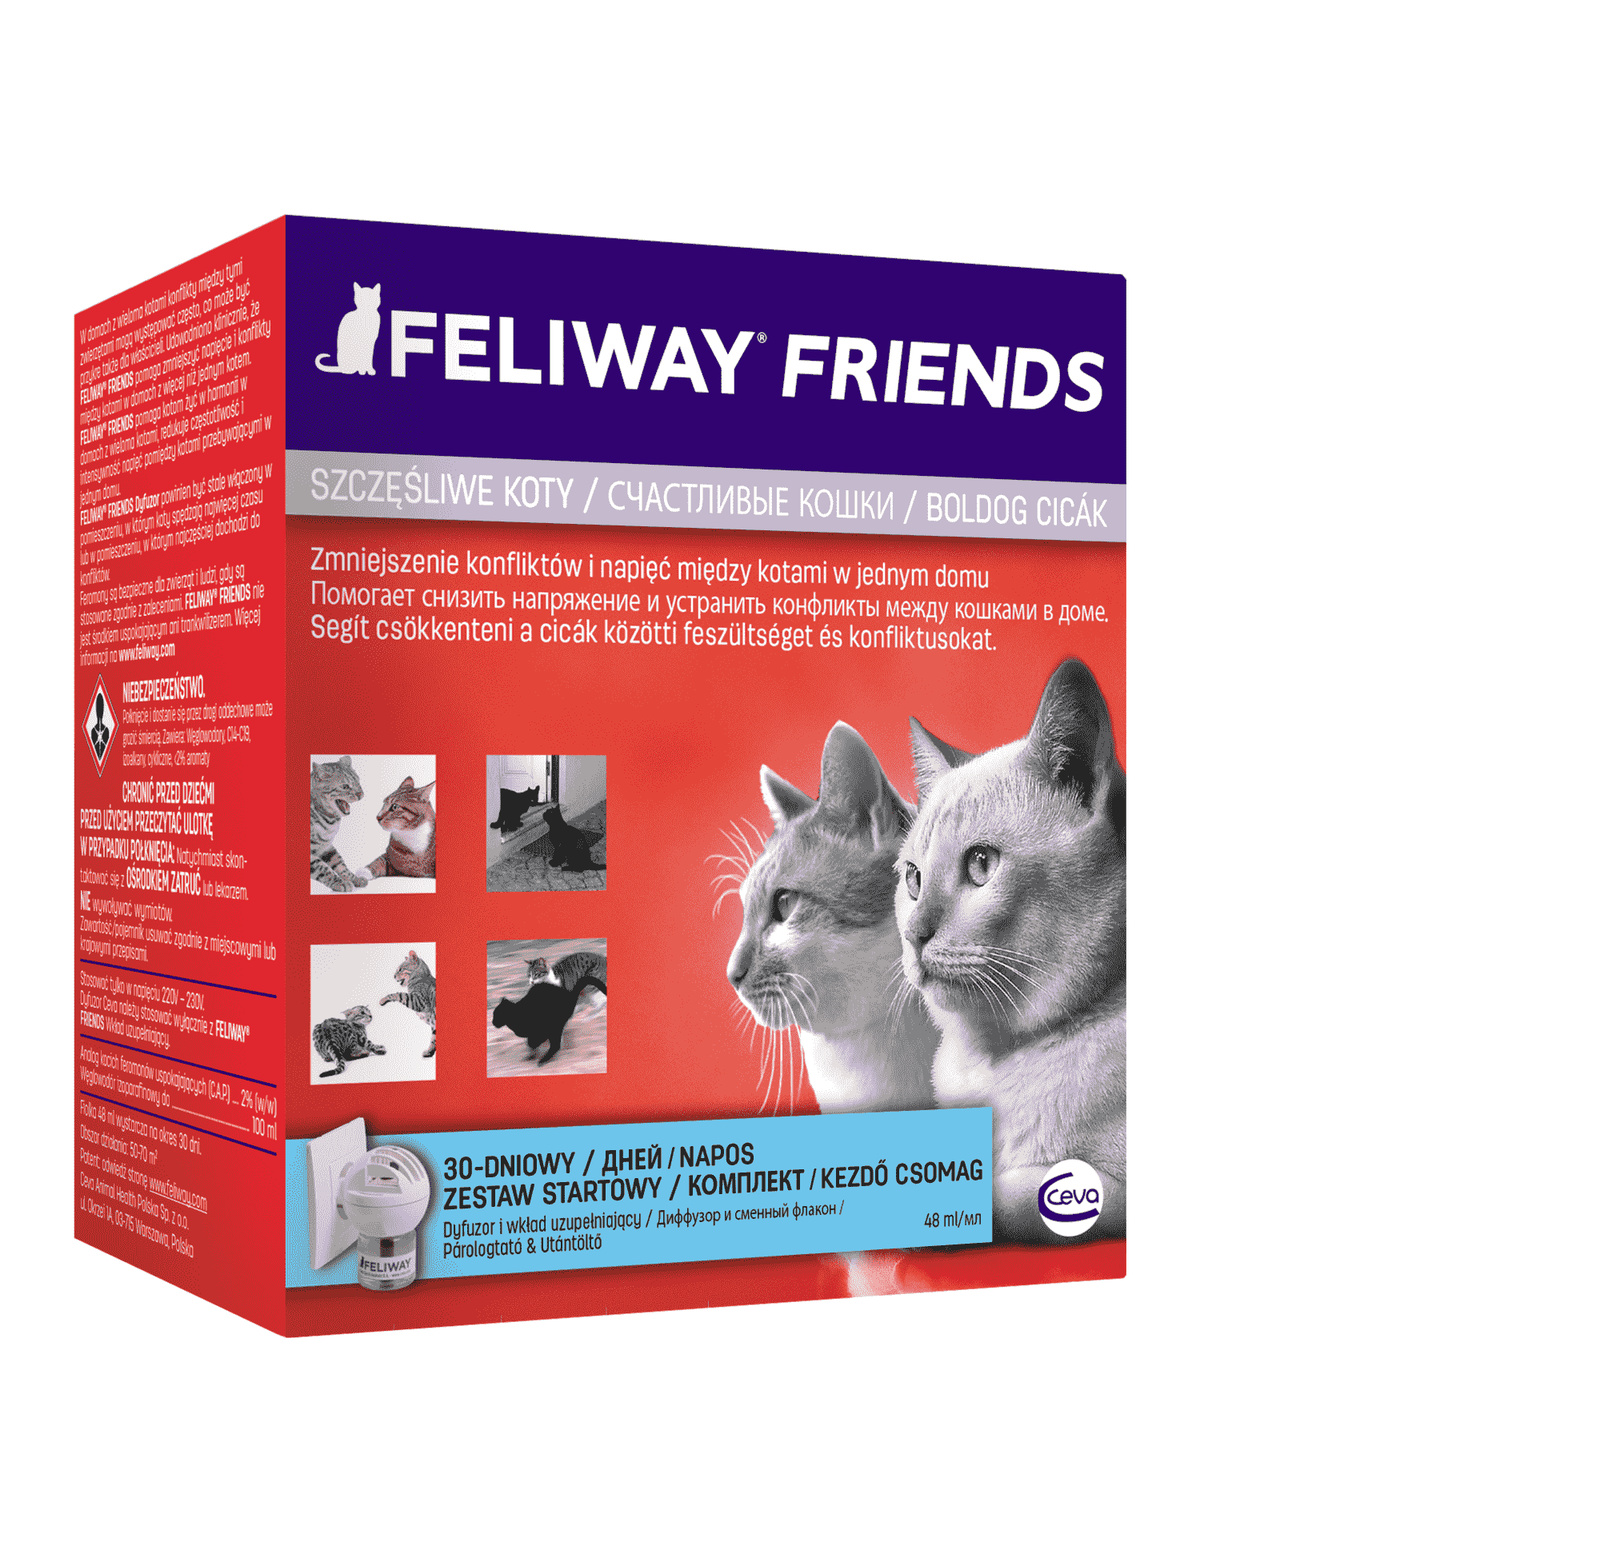 Ceva Ceva феромоны Феливей Фрэндс для кошек (диффузор + флакон) (155 г) ceva ceva феромоны феливей классик для кошек сменный блок для коррекции поведения 48 мл